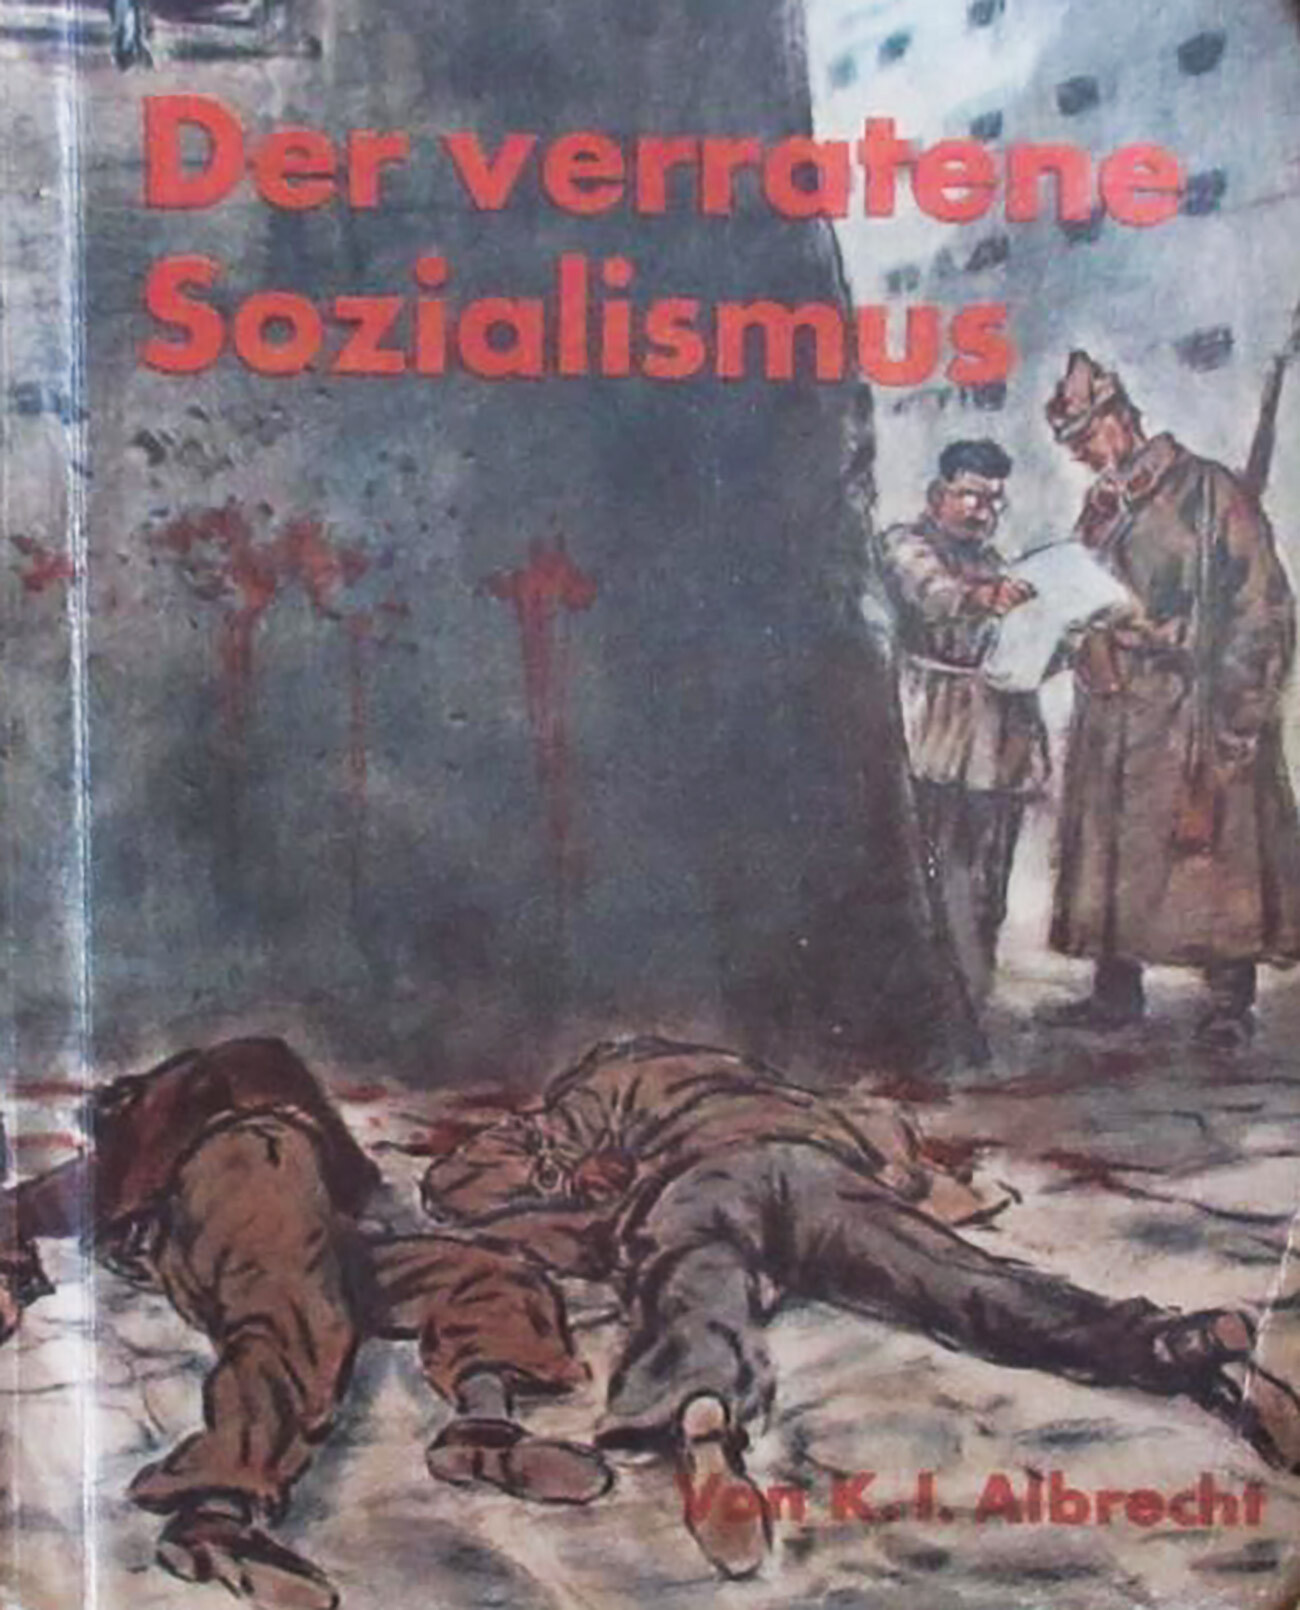 Korice autobiografske knjige K. I. Albrehta koju je koristila nacistička propaganda.